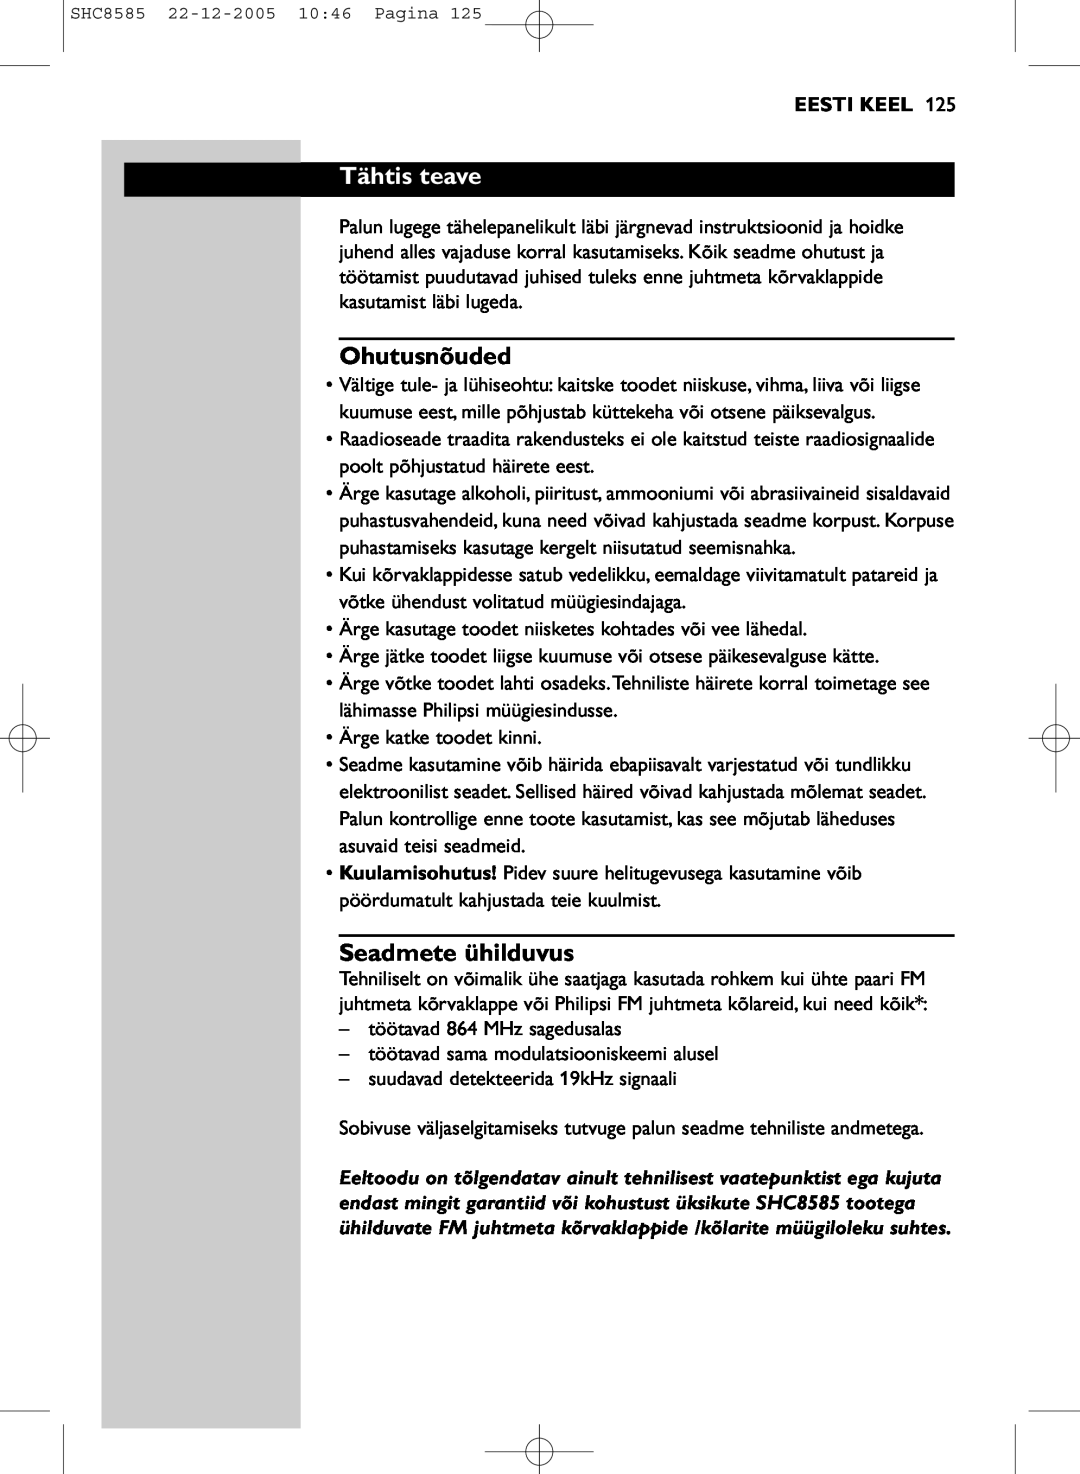 Philips SHC8585/05 manual Tähtis teave, Ohutusnõuded, Seadmete ühilduvus, Eesti Keel 